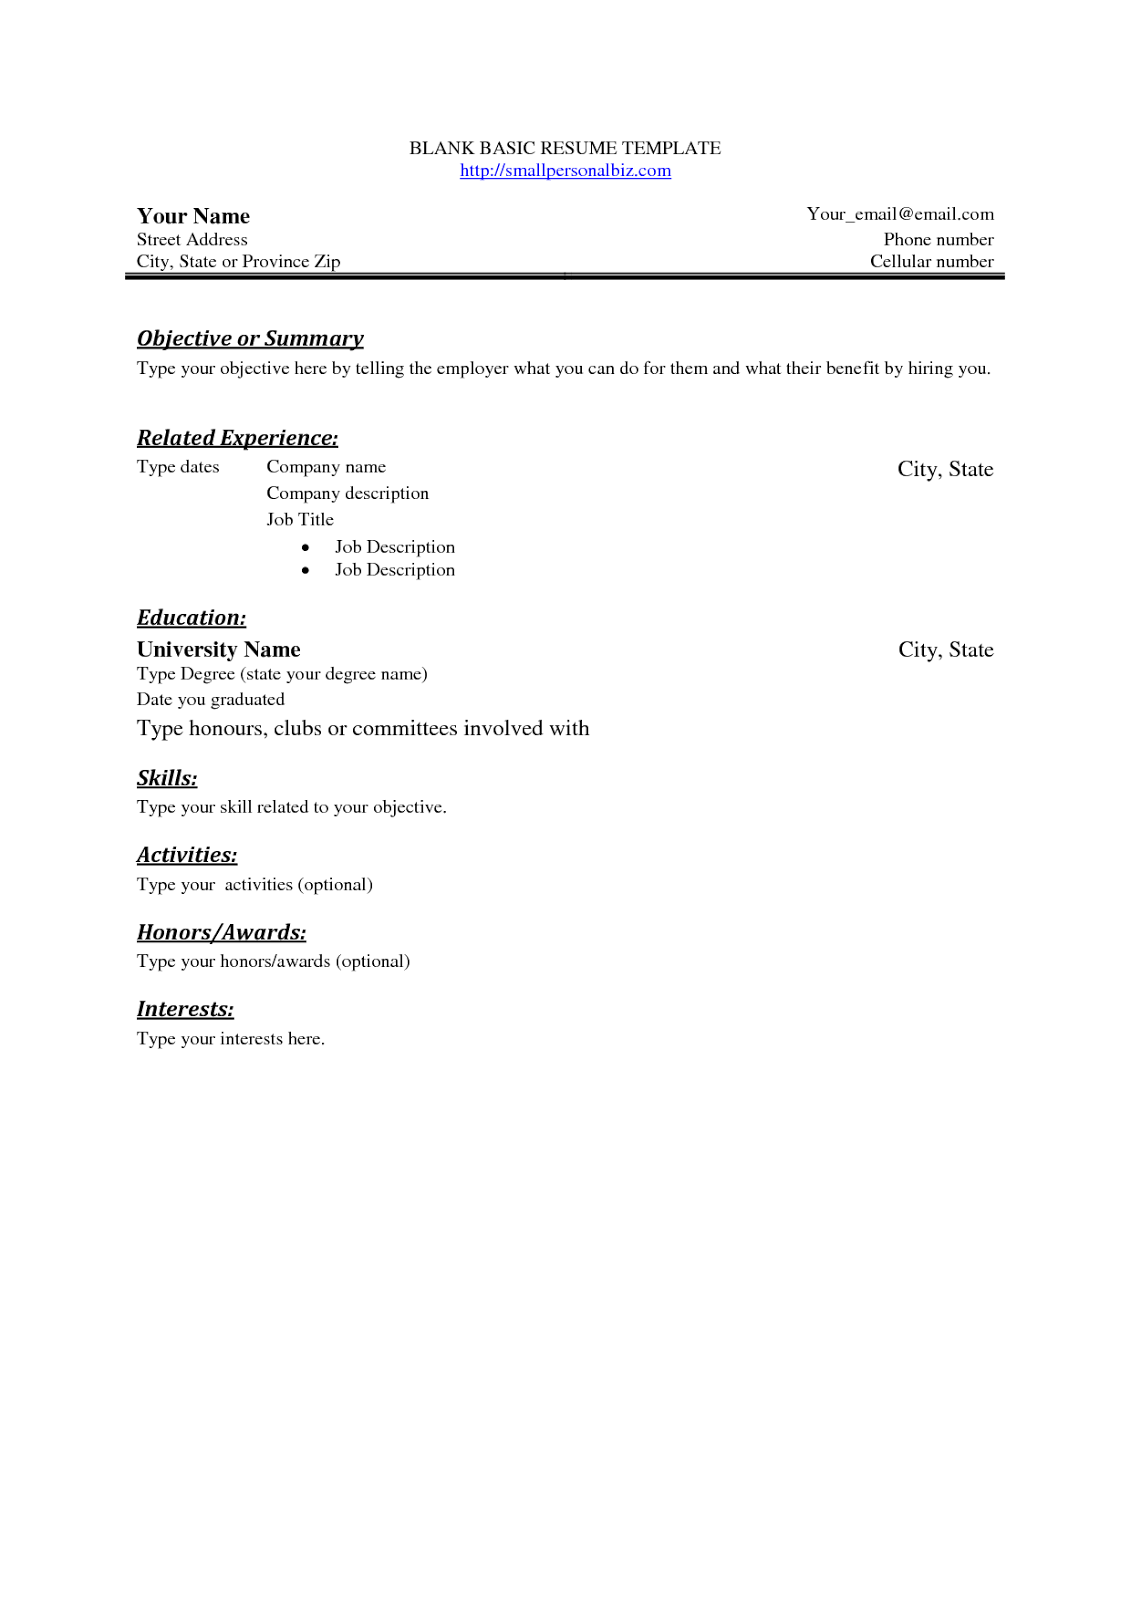 Resume practice worksheet